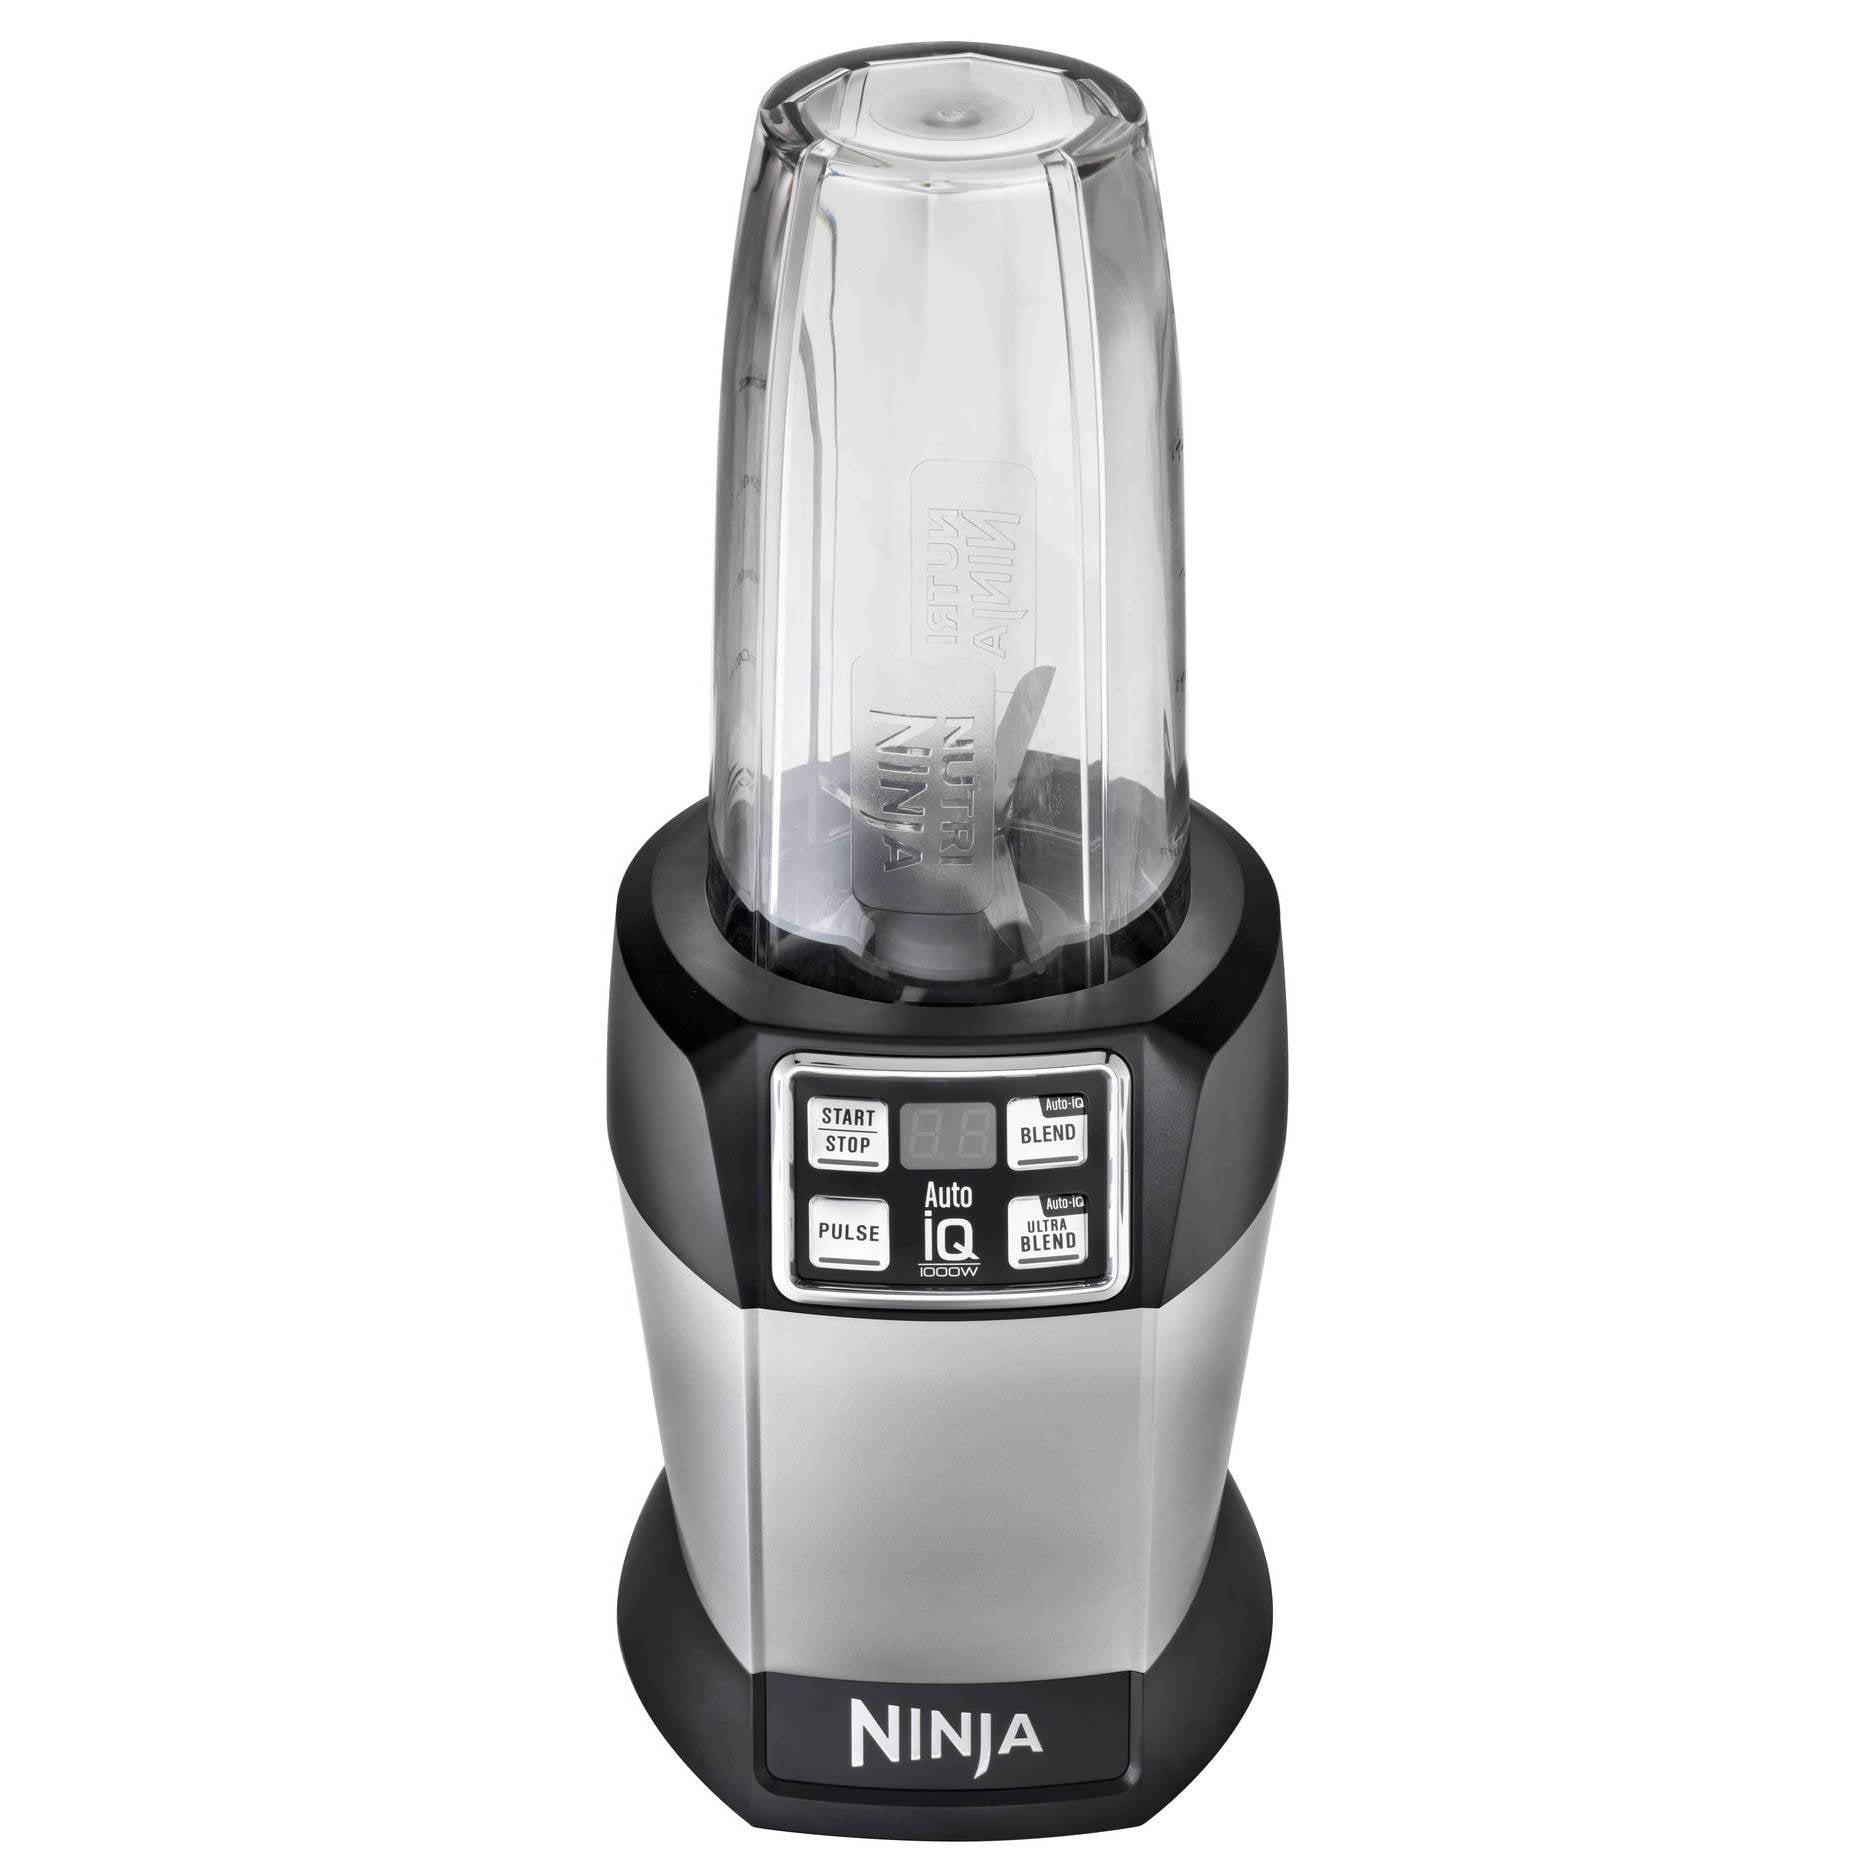 Nutri Ninja (Auto-iQ Blender, Bl480)